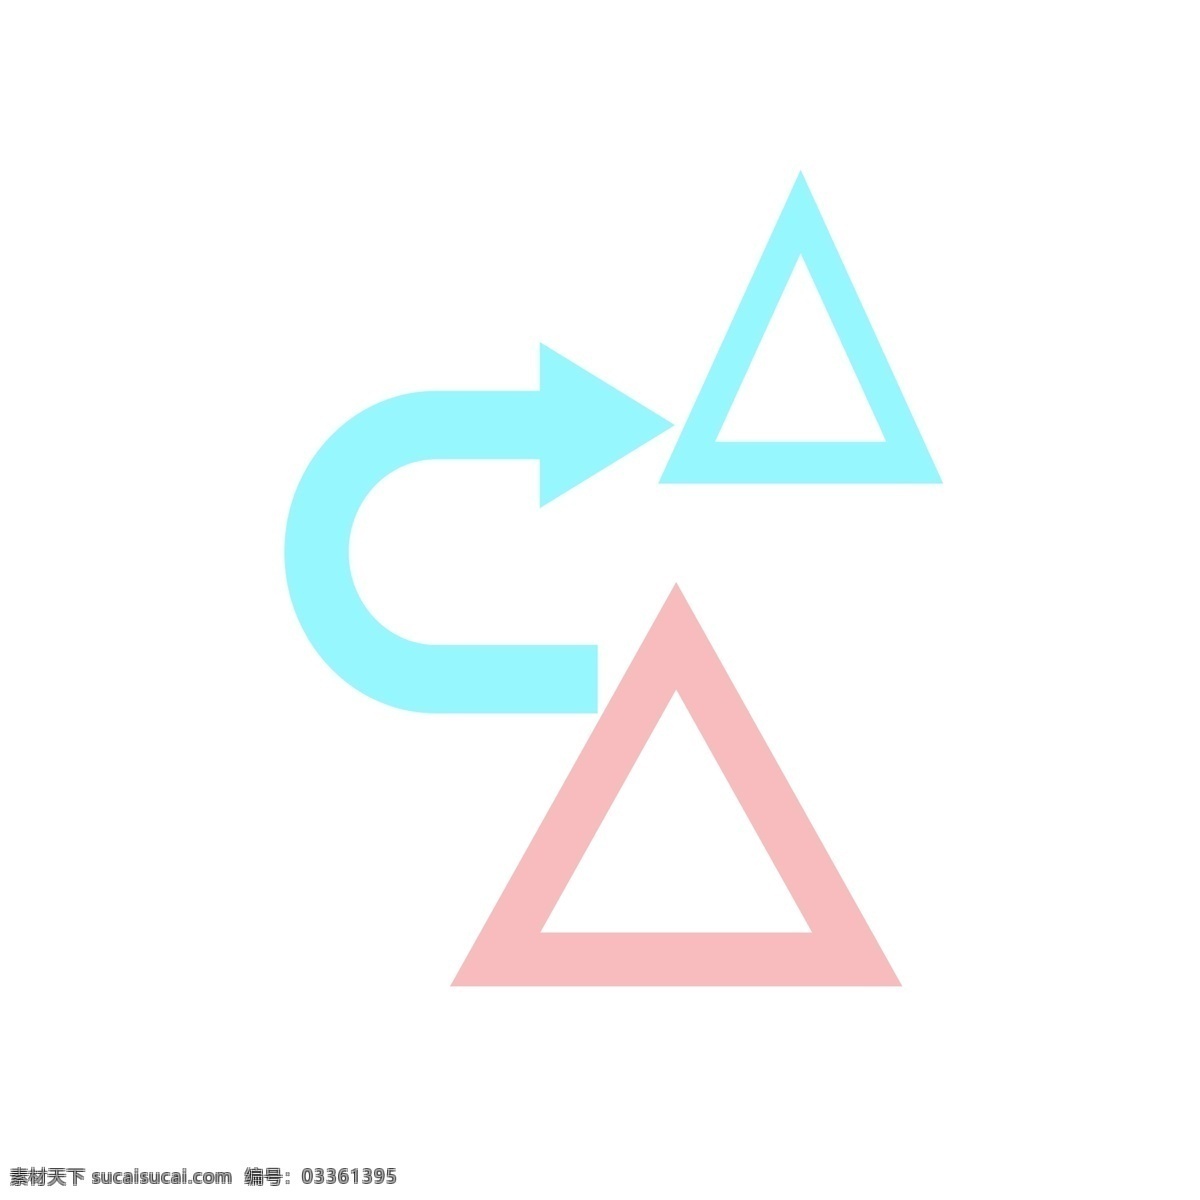 箭头 标志 走形 装饰 数据分析 箭头指向标志 商务分析标志 三角形 弯曲箭头 粉色 蓝色 分析